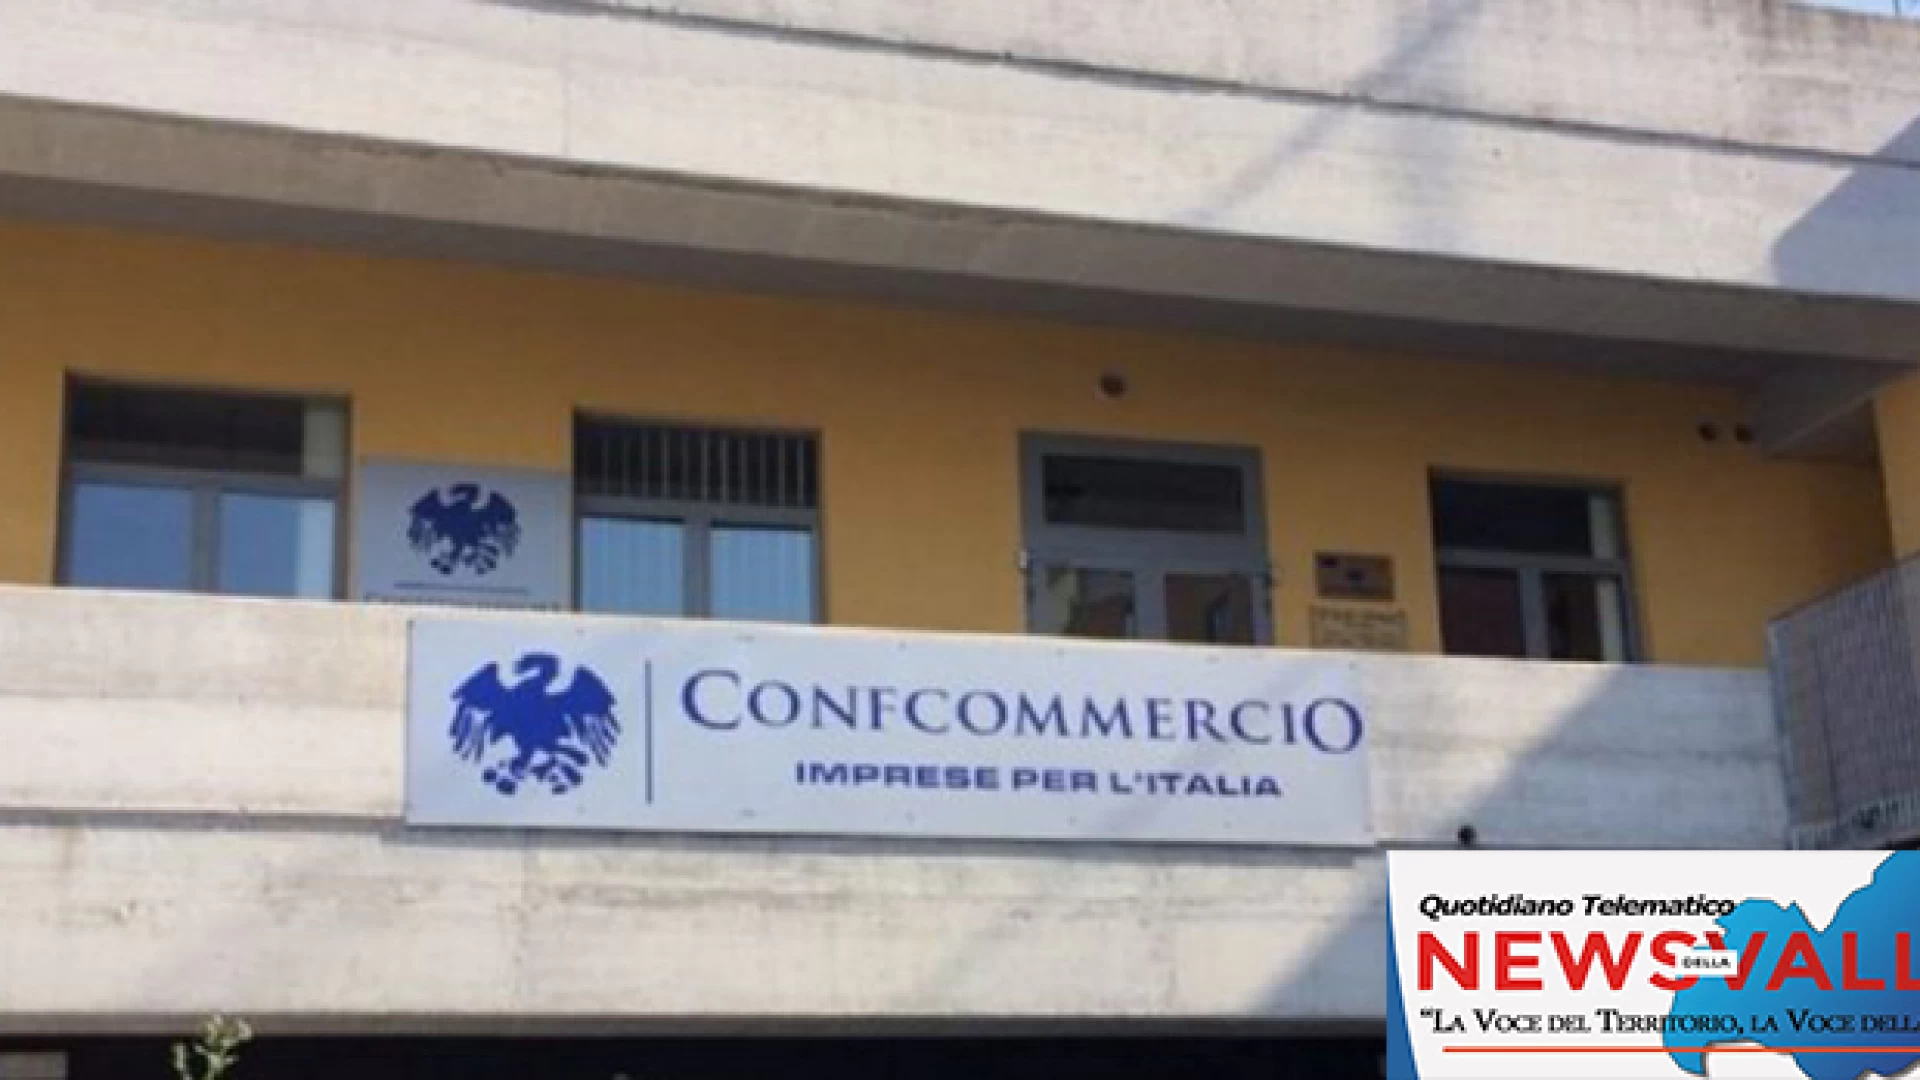 Campobasso: la Confcommercio propone un convegno sulla contrattazione collettiva di secondo livello.